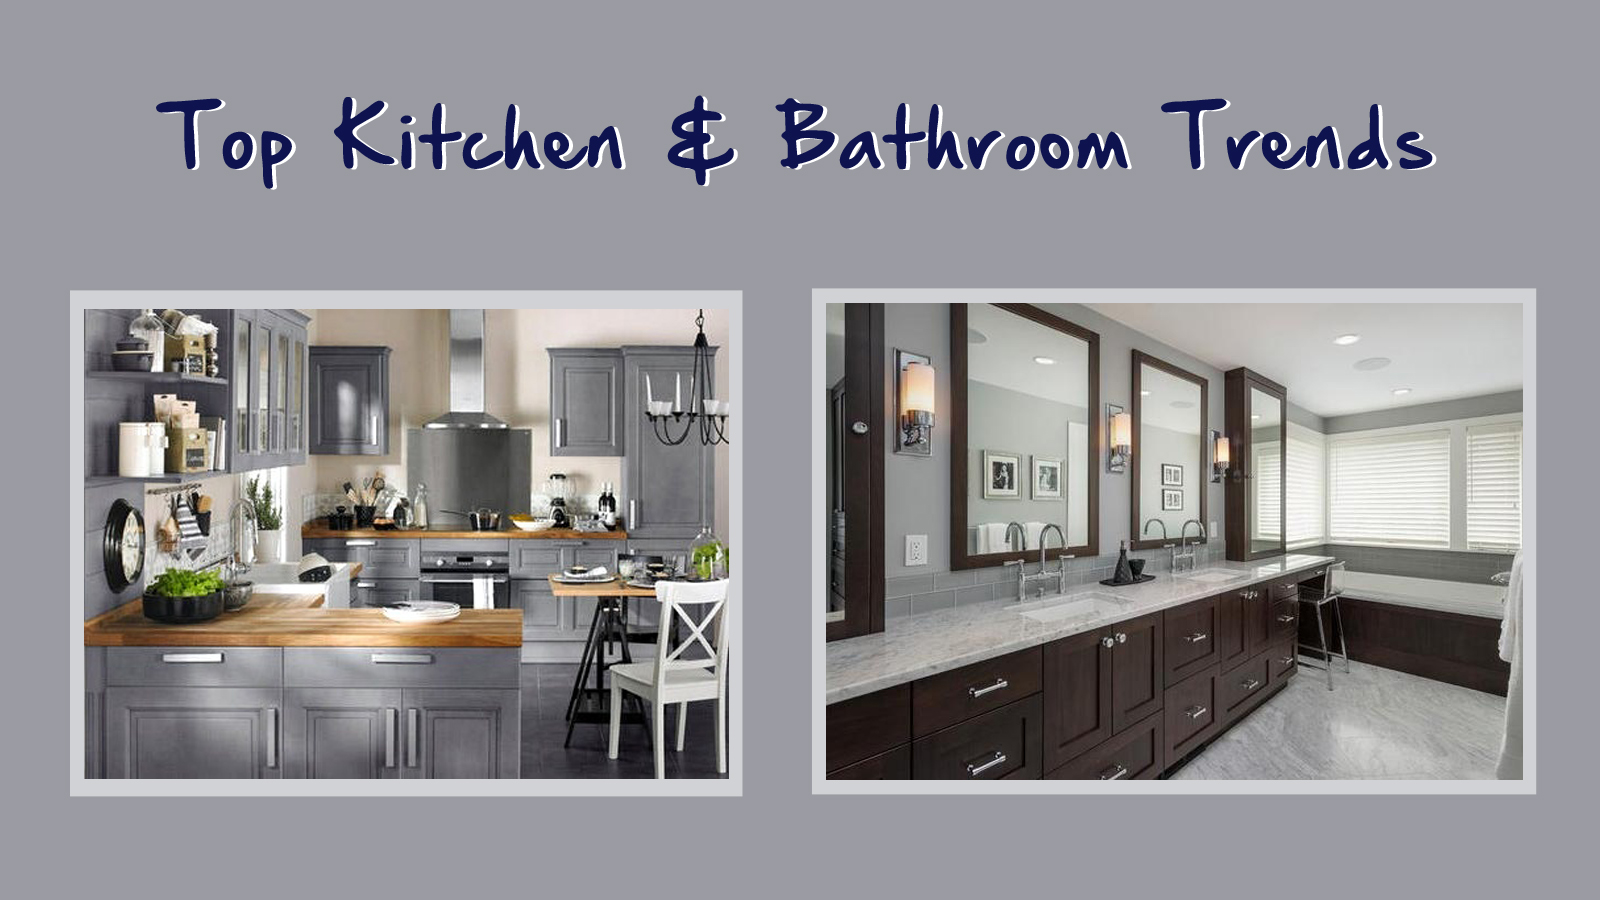 Top Kitchen & Bathroom Trends